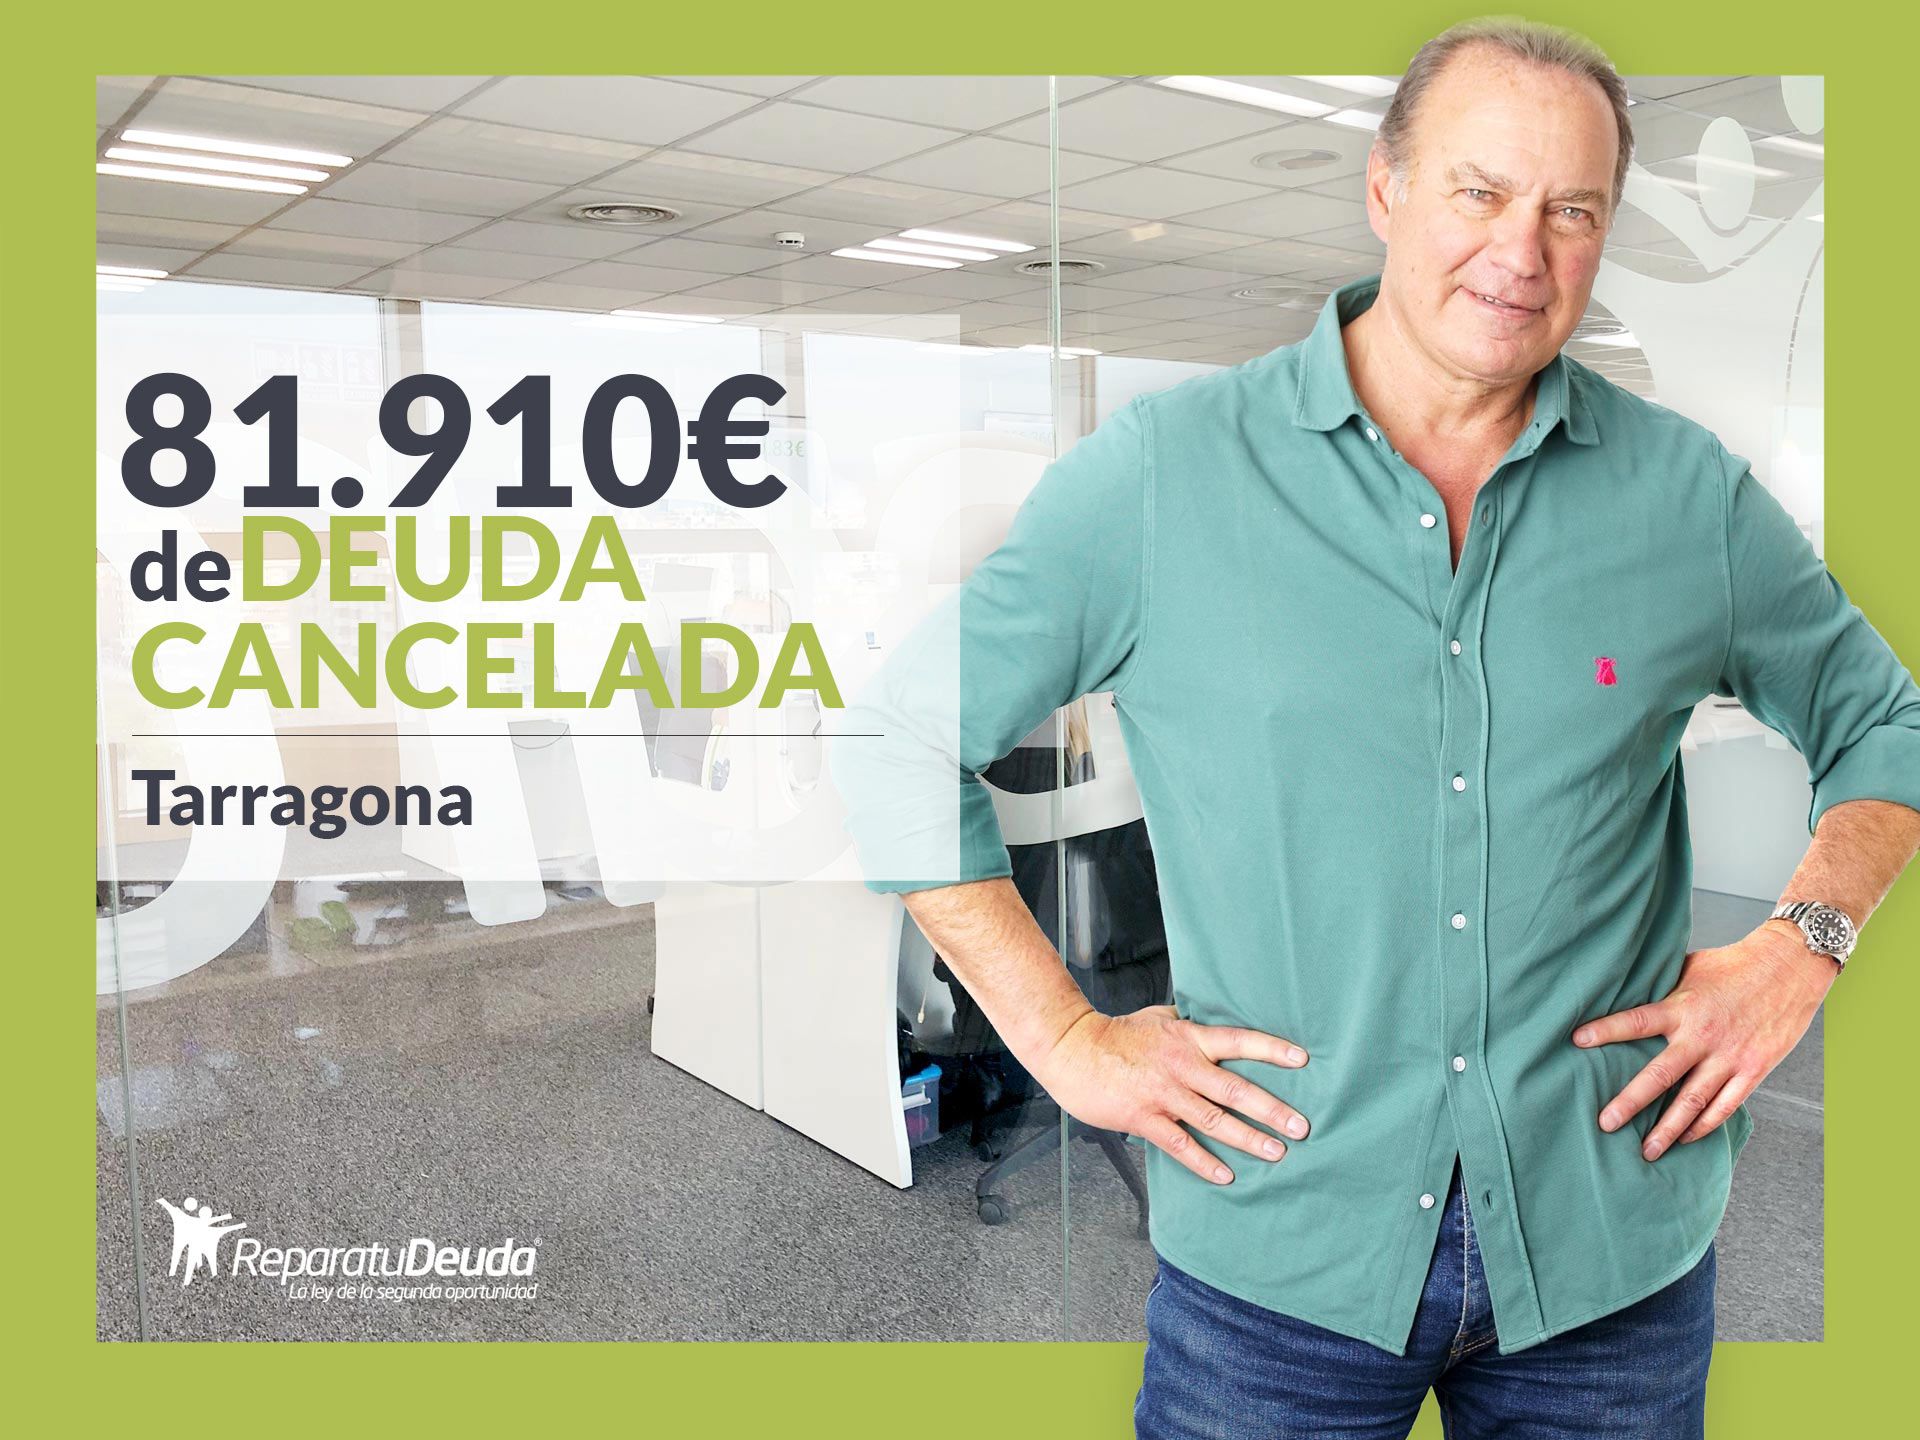 Repara tu Deuda Abogados cancela 81.910? en Tarragona (Catalunya) gracias a la Ley de Segunda Oportunidad